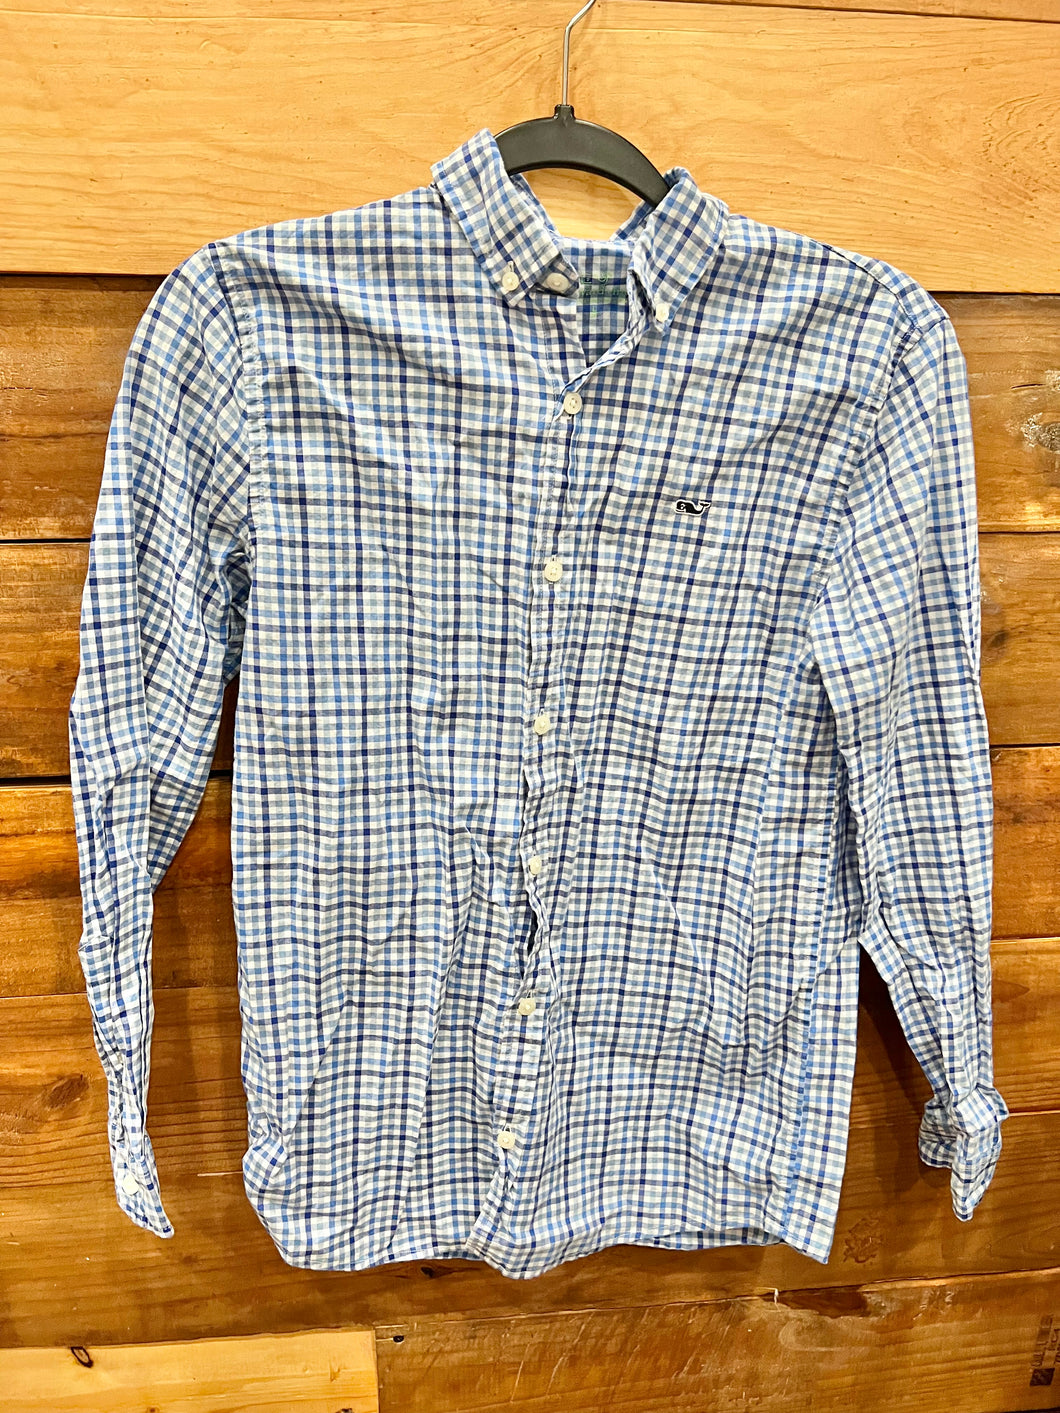 Vineyard Blue Plaid Shirt Size 16